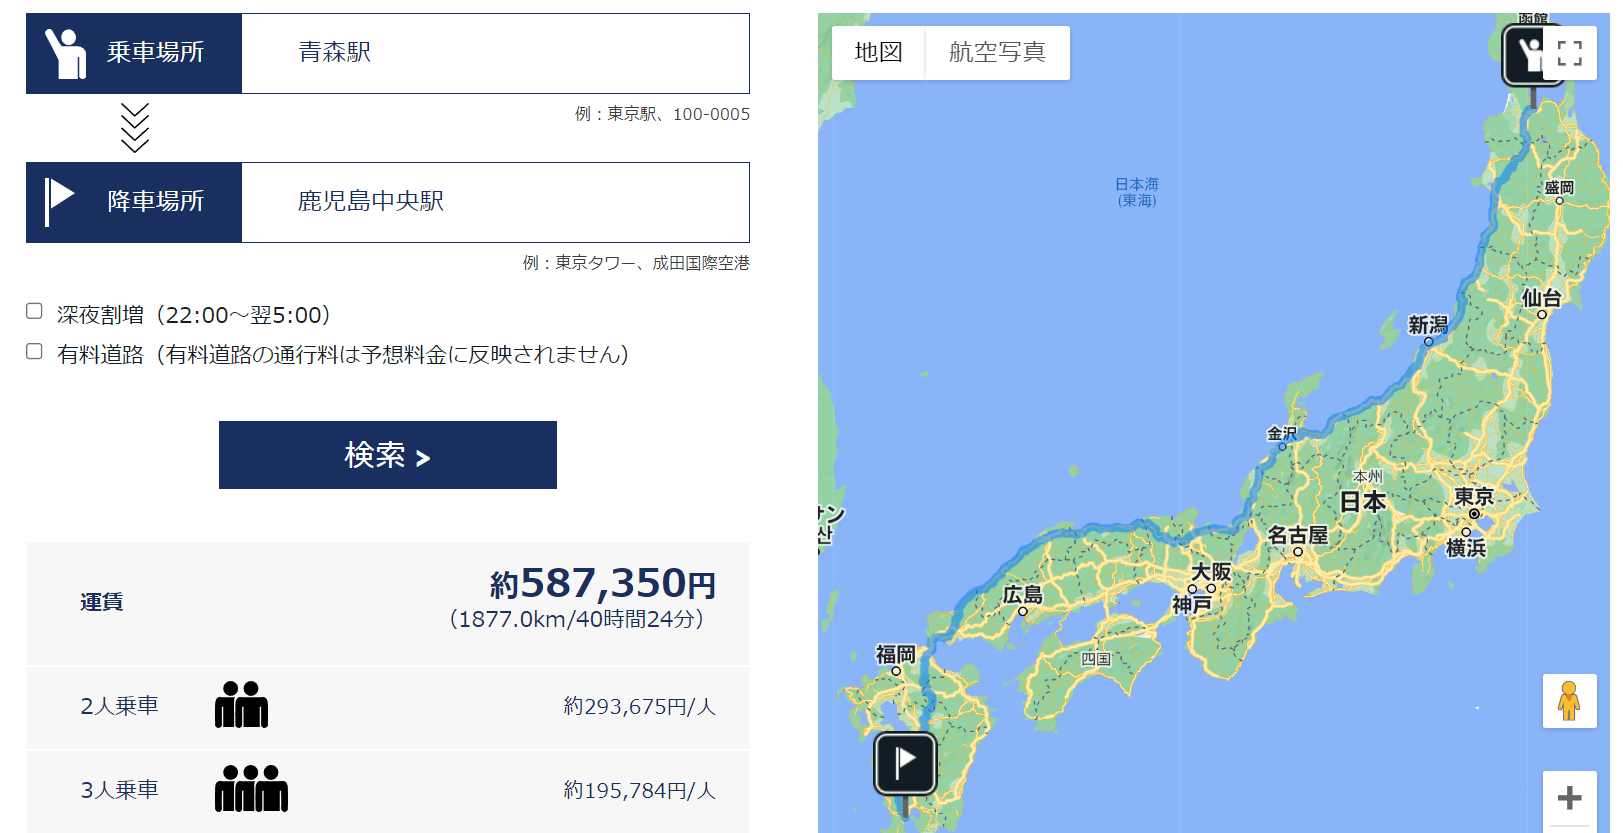 日本で青森から鹿児島までタクシーに乗ると約60万円